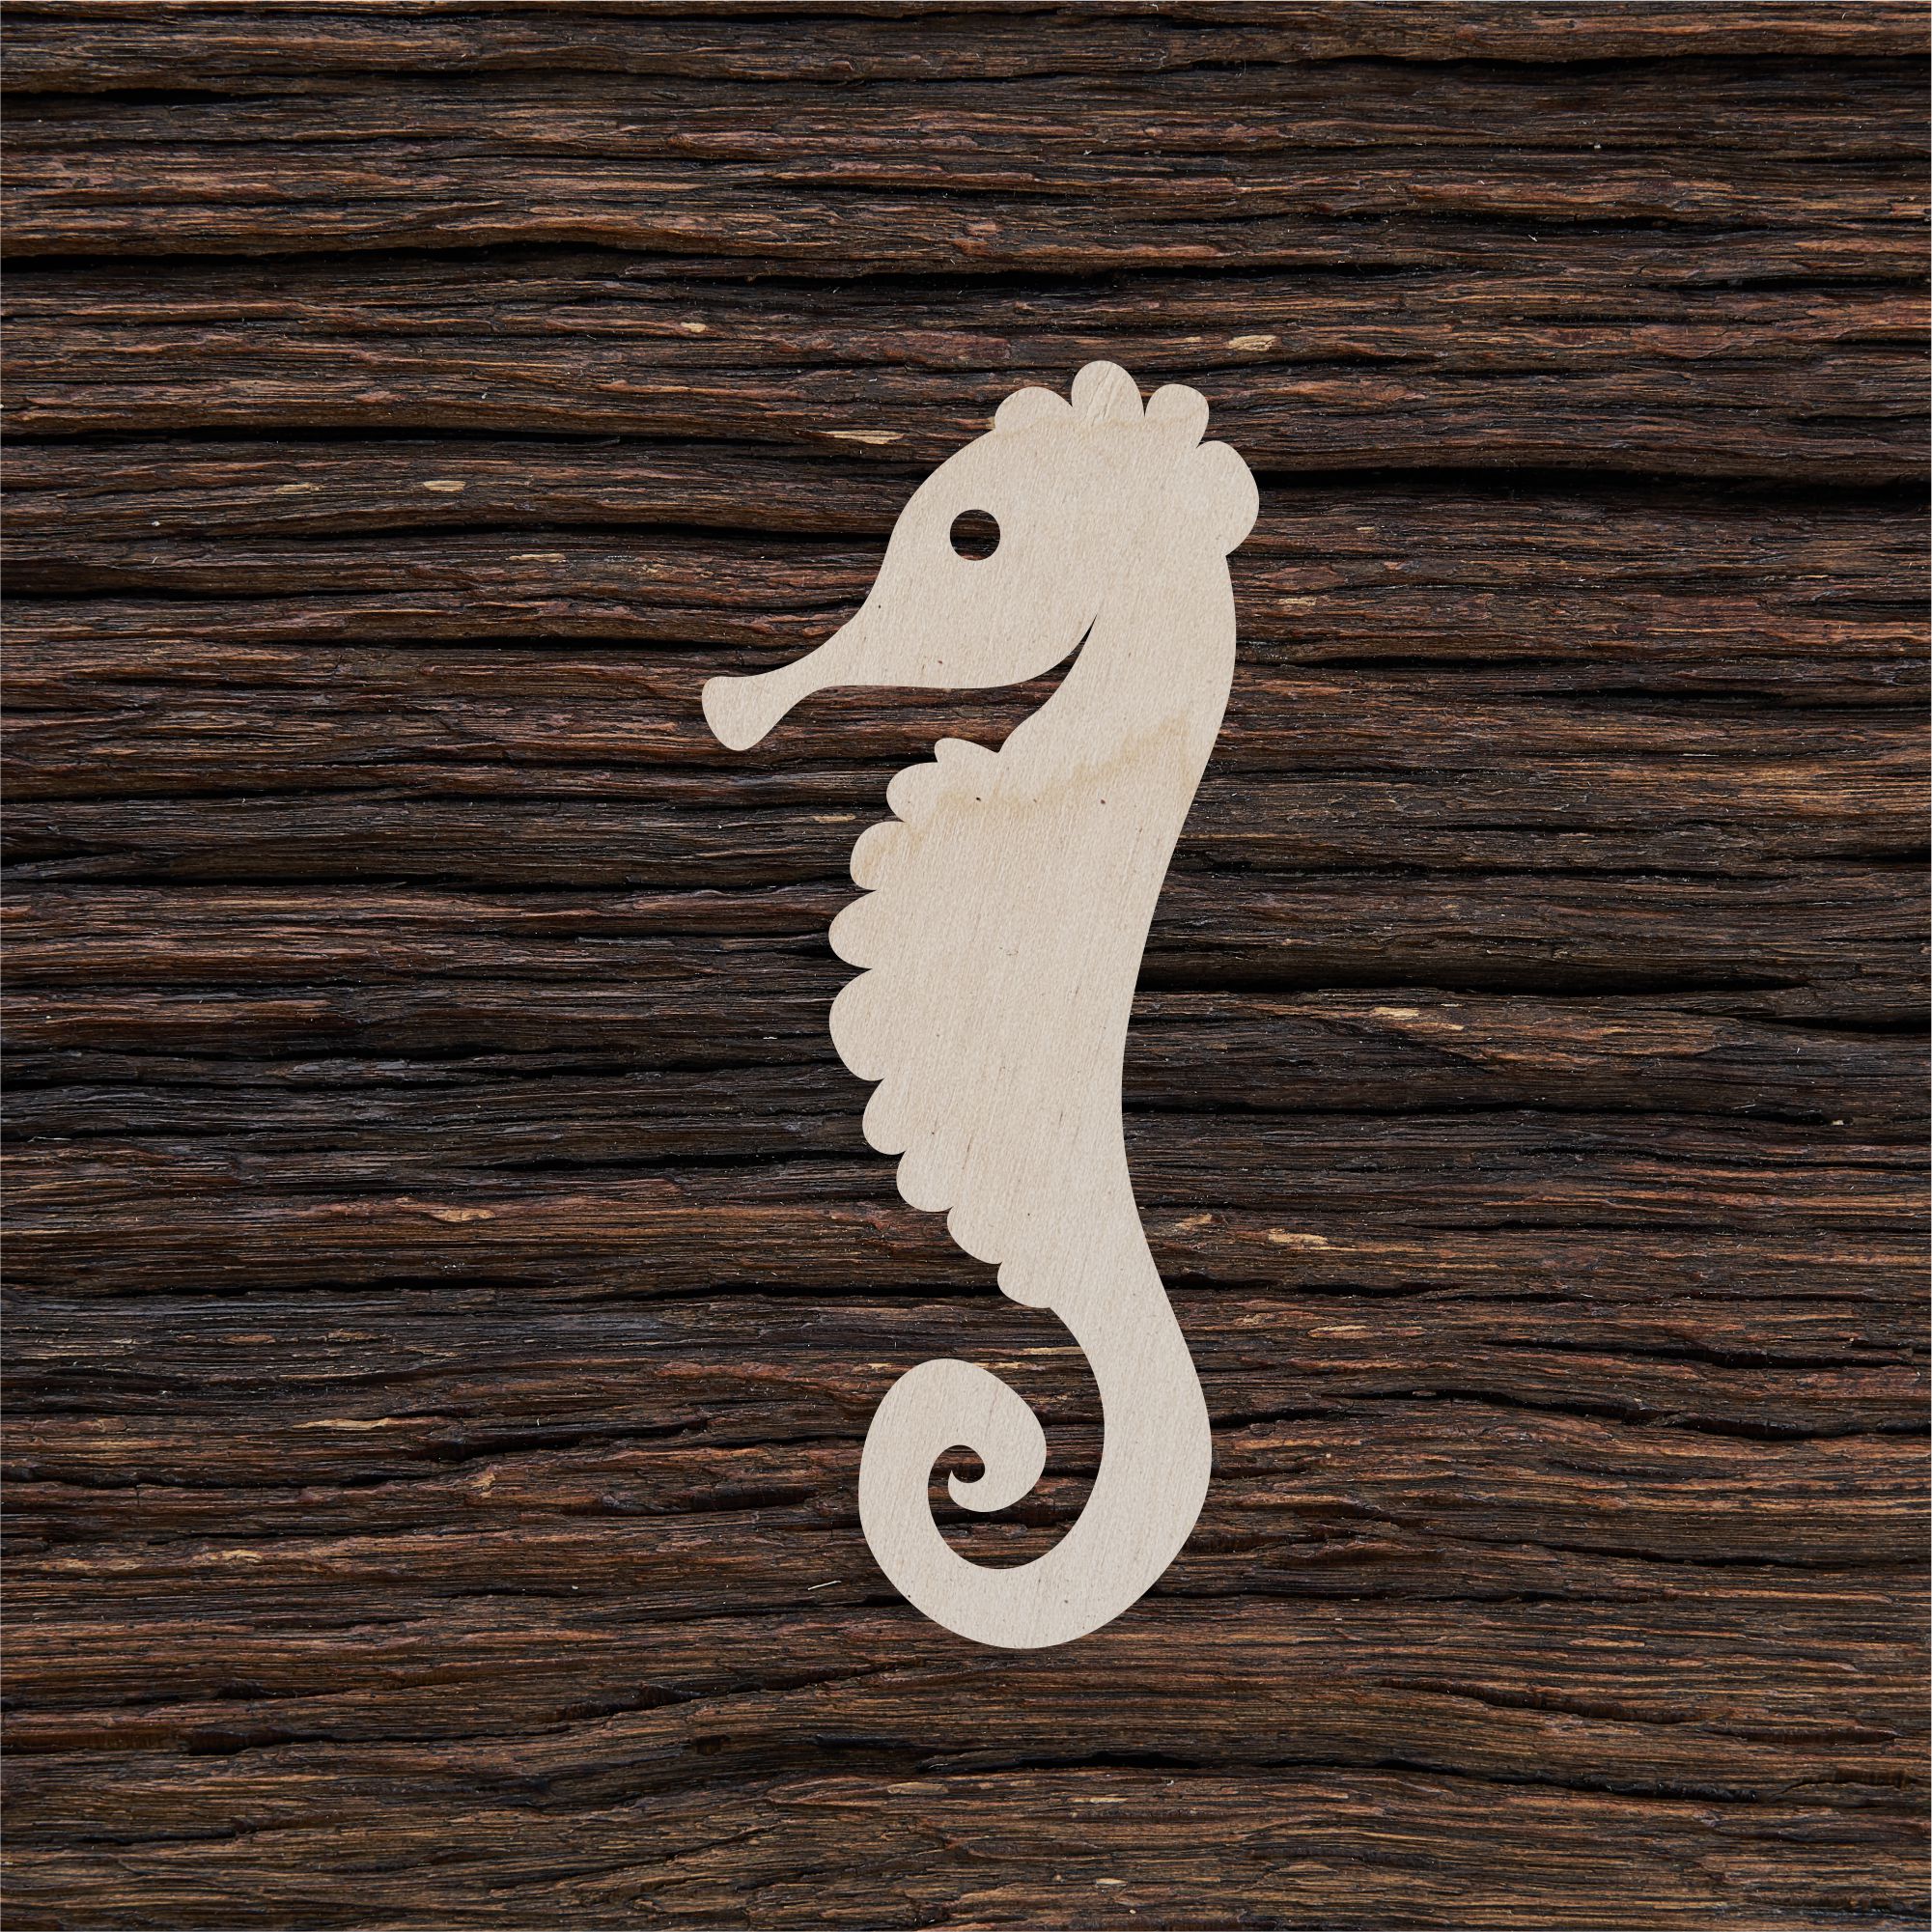 Jūrų arkliukas - medinis gaminys, pjautas lazeriu - dekoravimui ir dažymui 